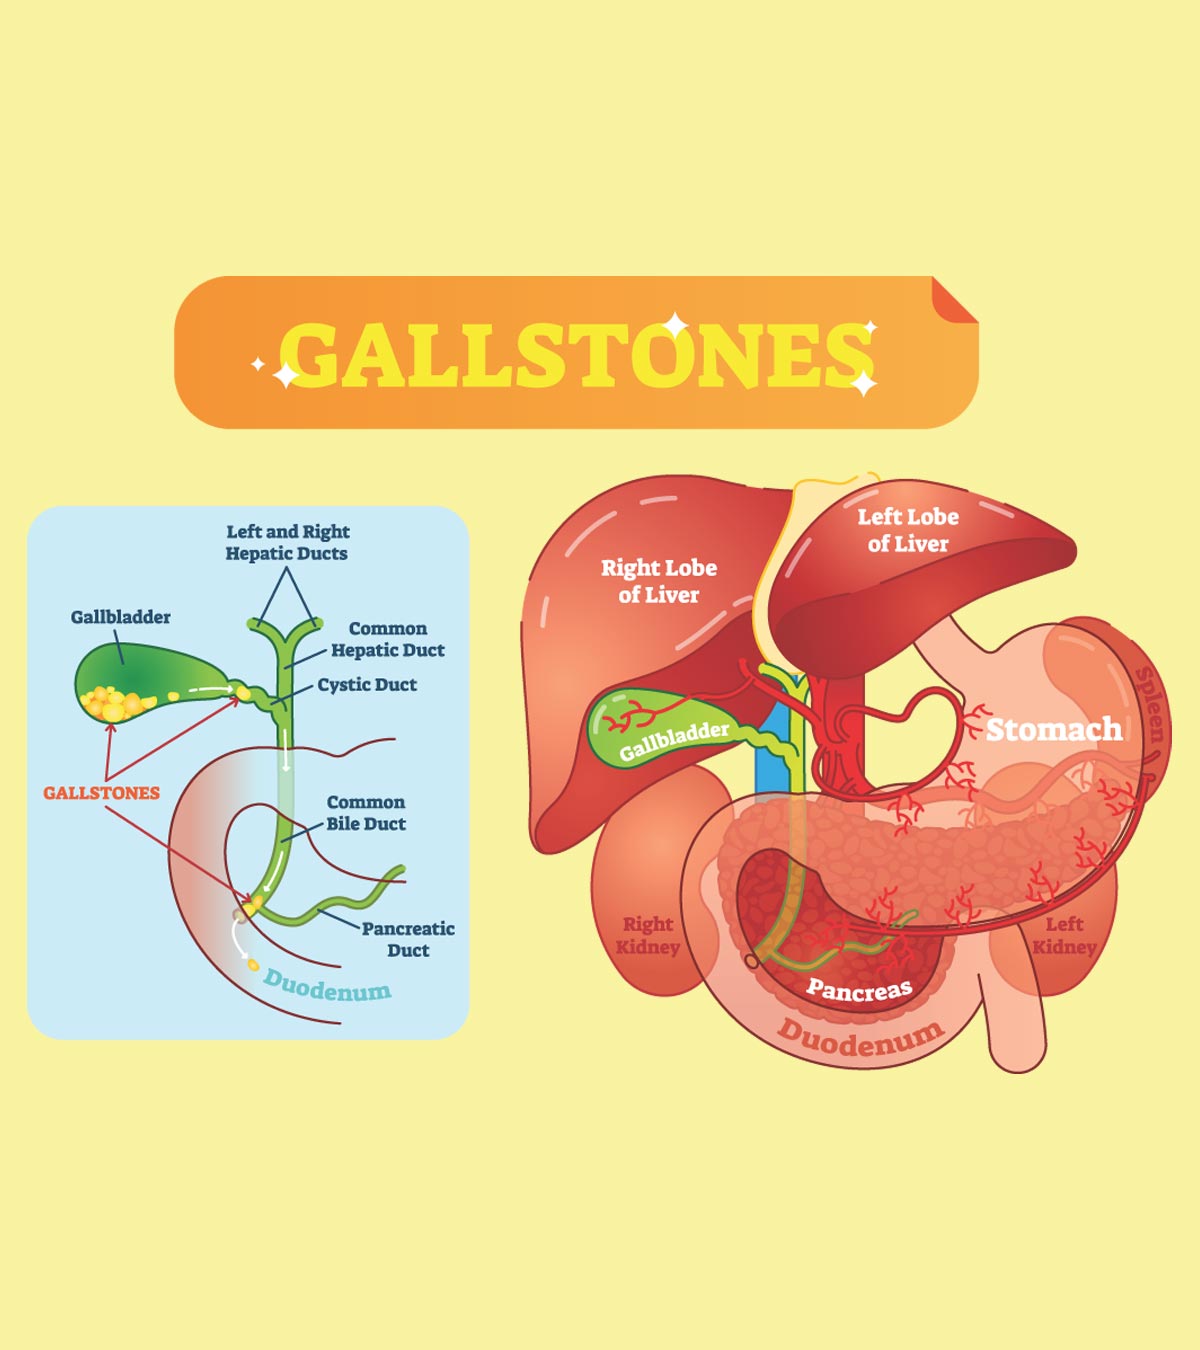 प्रेगनेंसी में पित्ताशय की पथरी होना: कारण, इलाज व जटिलताएं | Gallbladder Stone In Pregnancy In Hindi